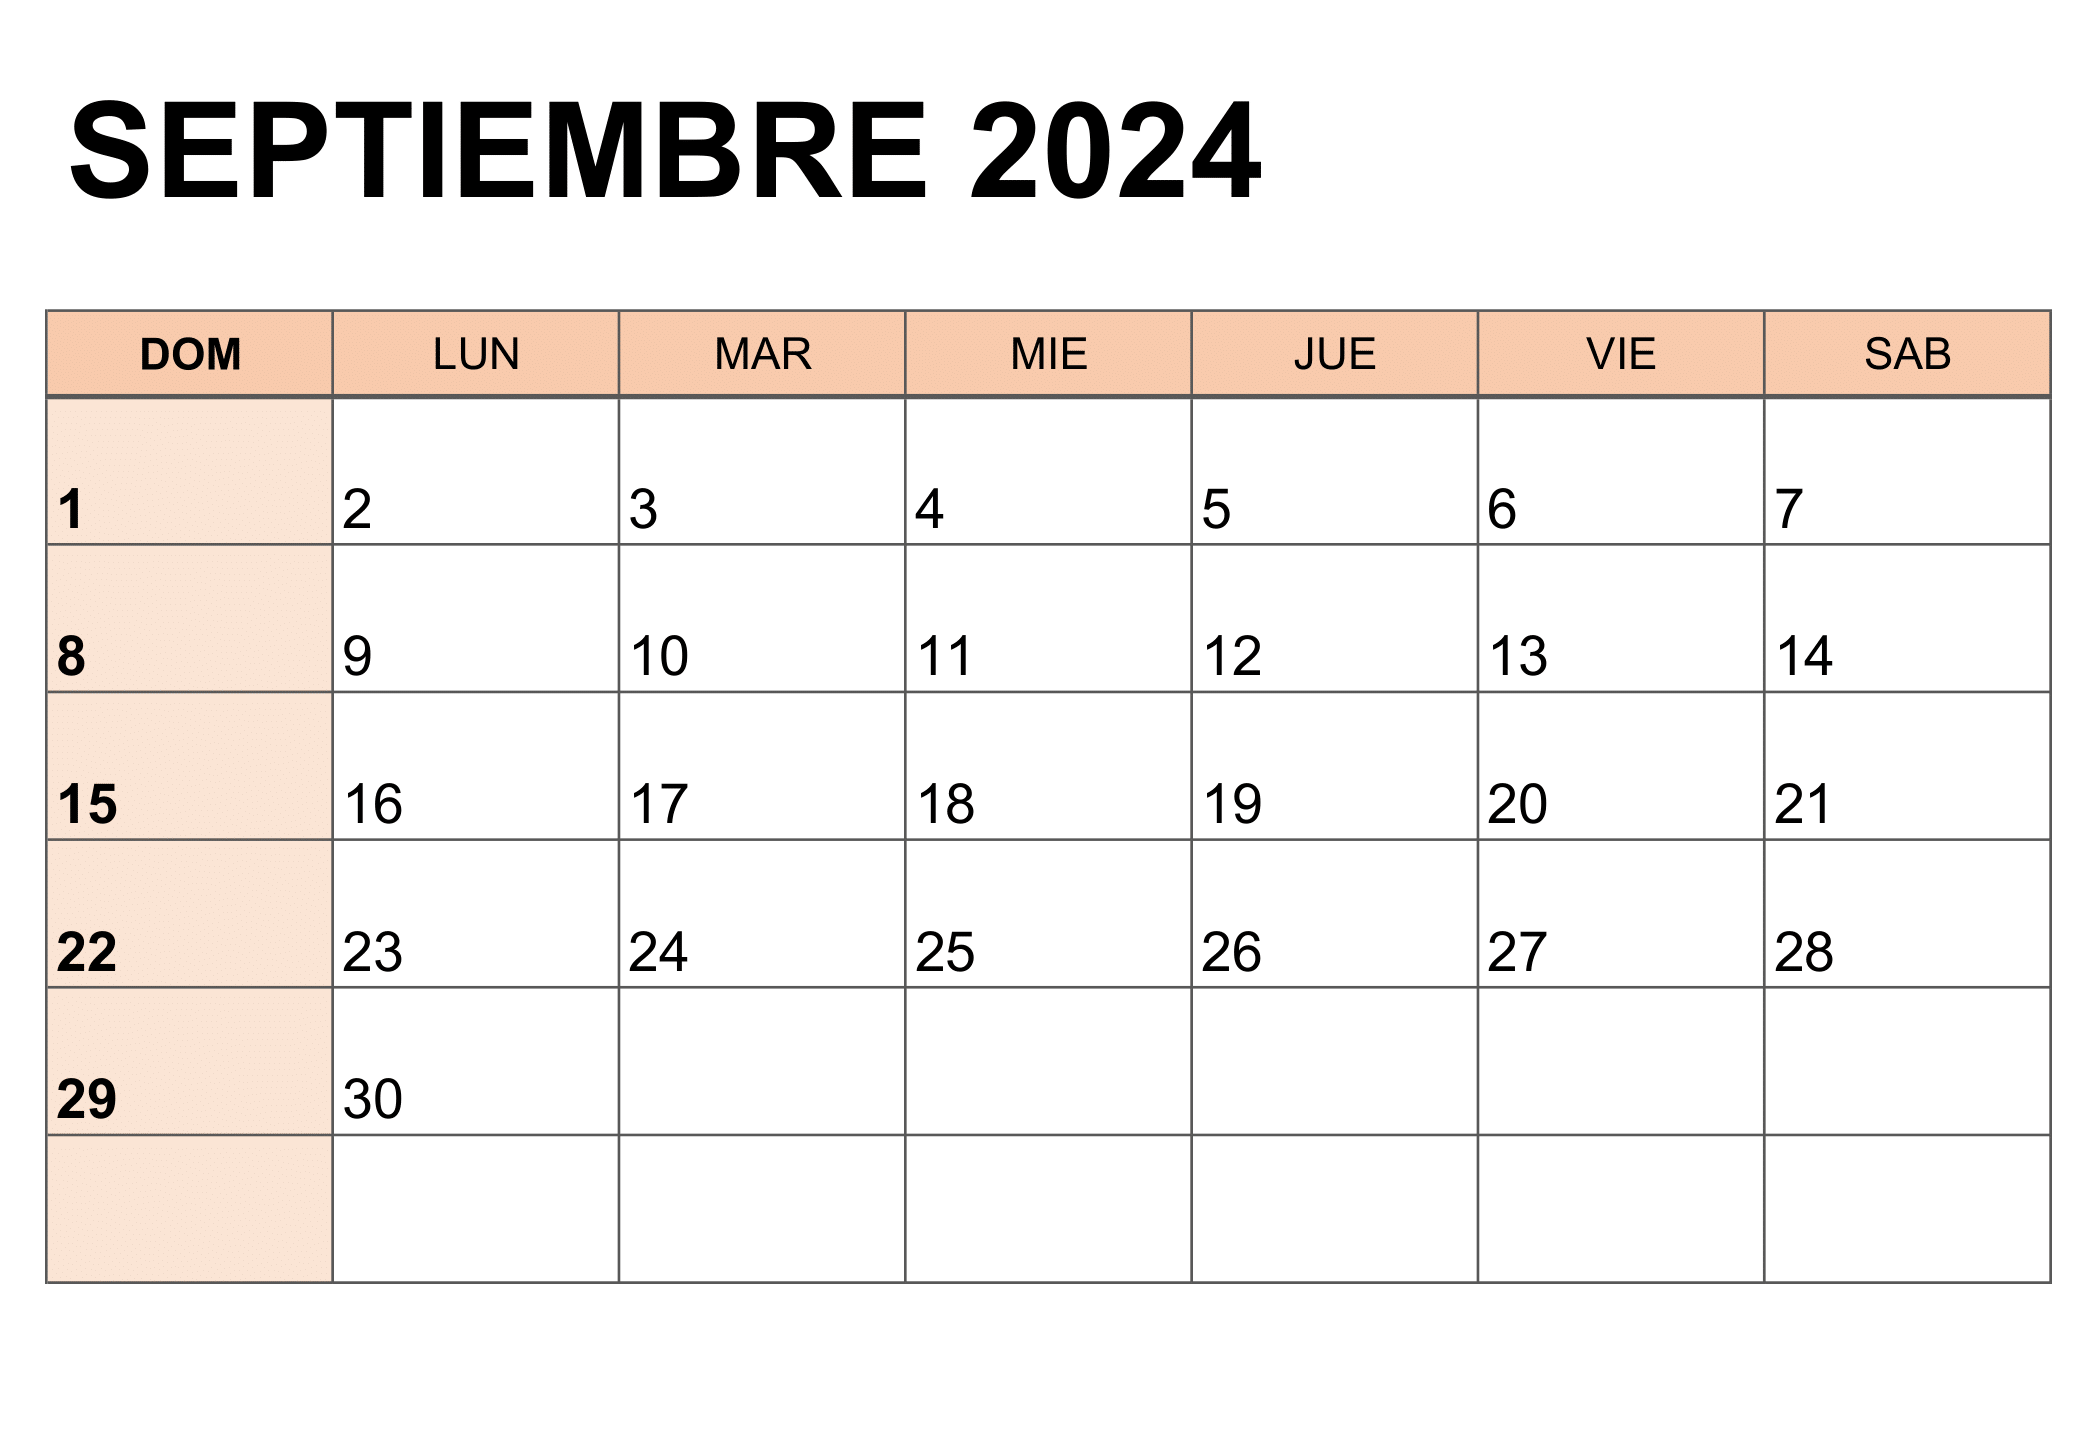 Descripción visual del calendario correspondiente al mes de septiembre de 2024